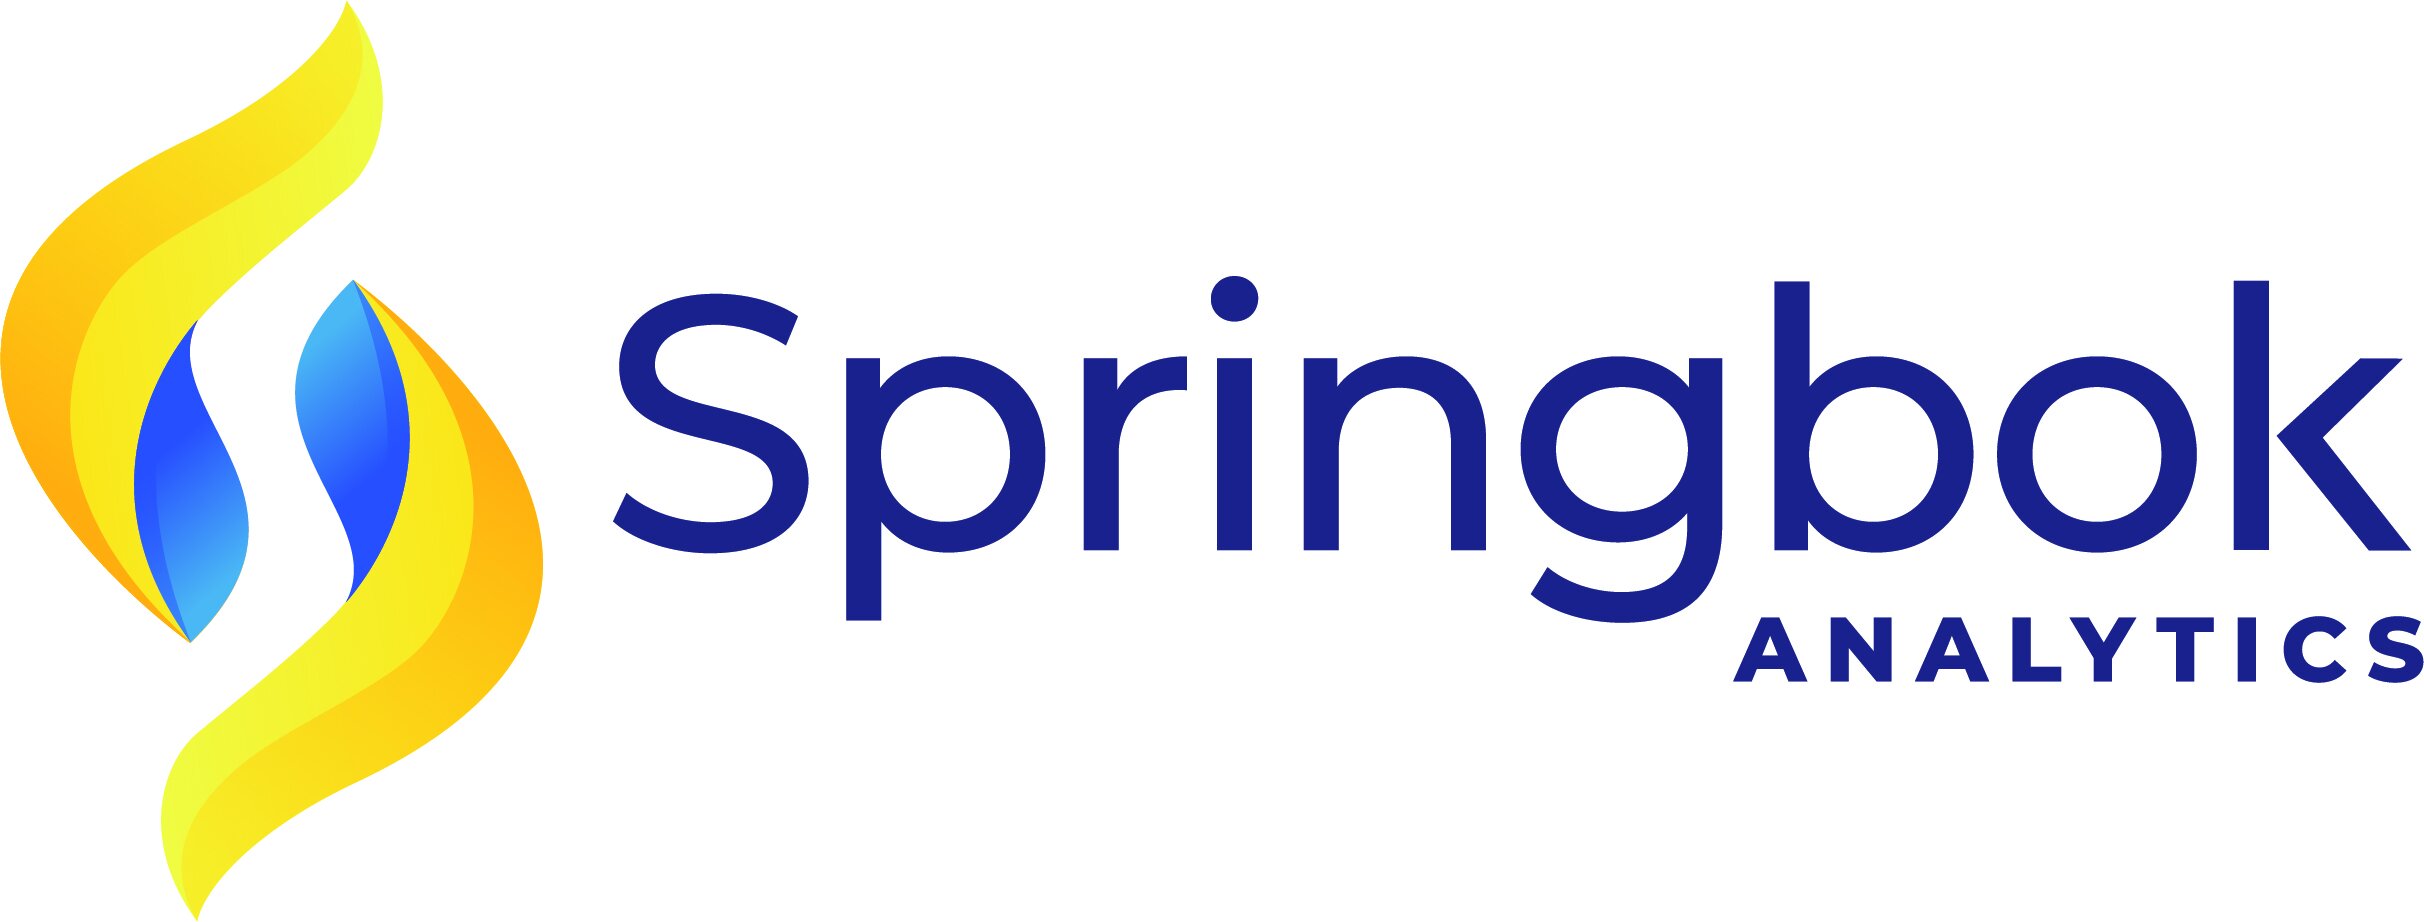 Springbok-Logo-Full-CMYK-HR.jpg